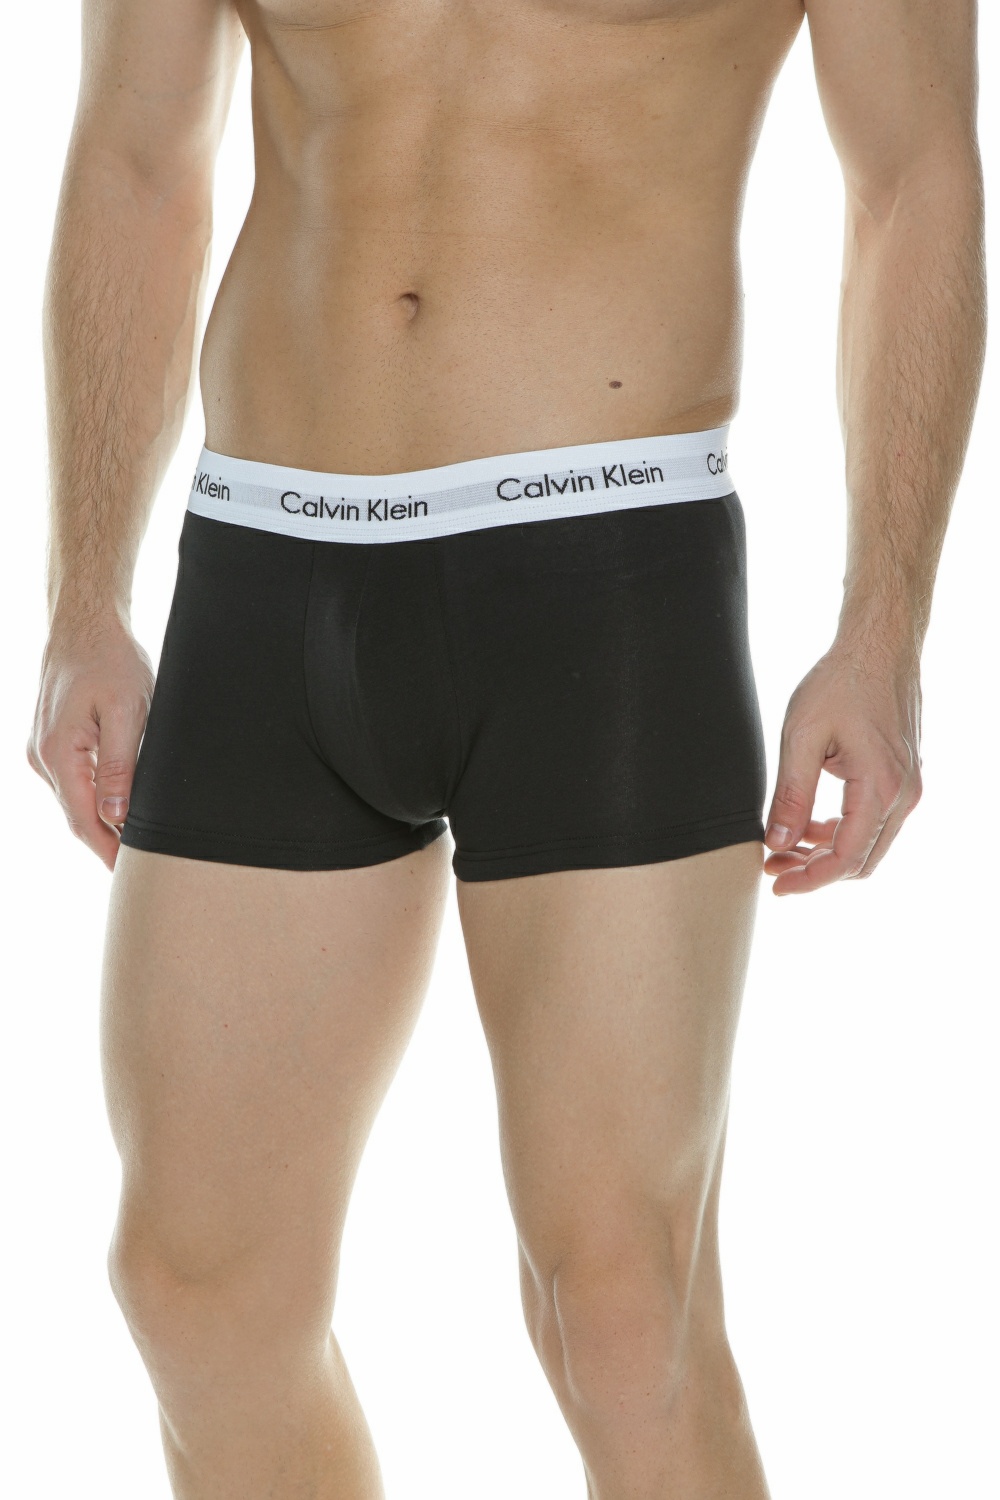 CK UNDERWEAR – Σετ ανδρικα εσωρουχα Calvin Klein Underwear LOW RISE μαυρο γκρι λευκο